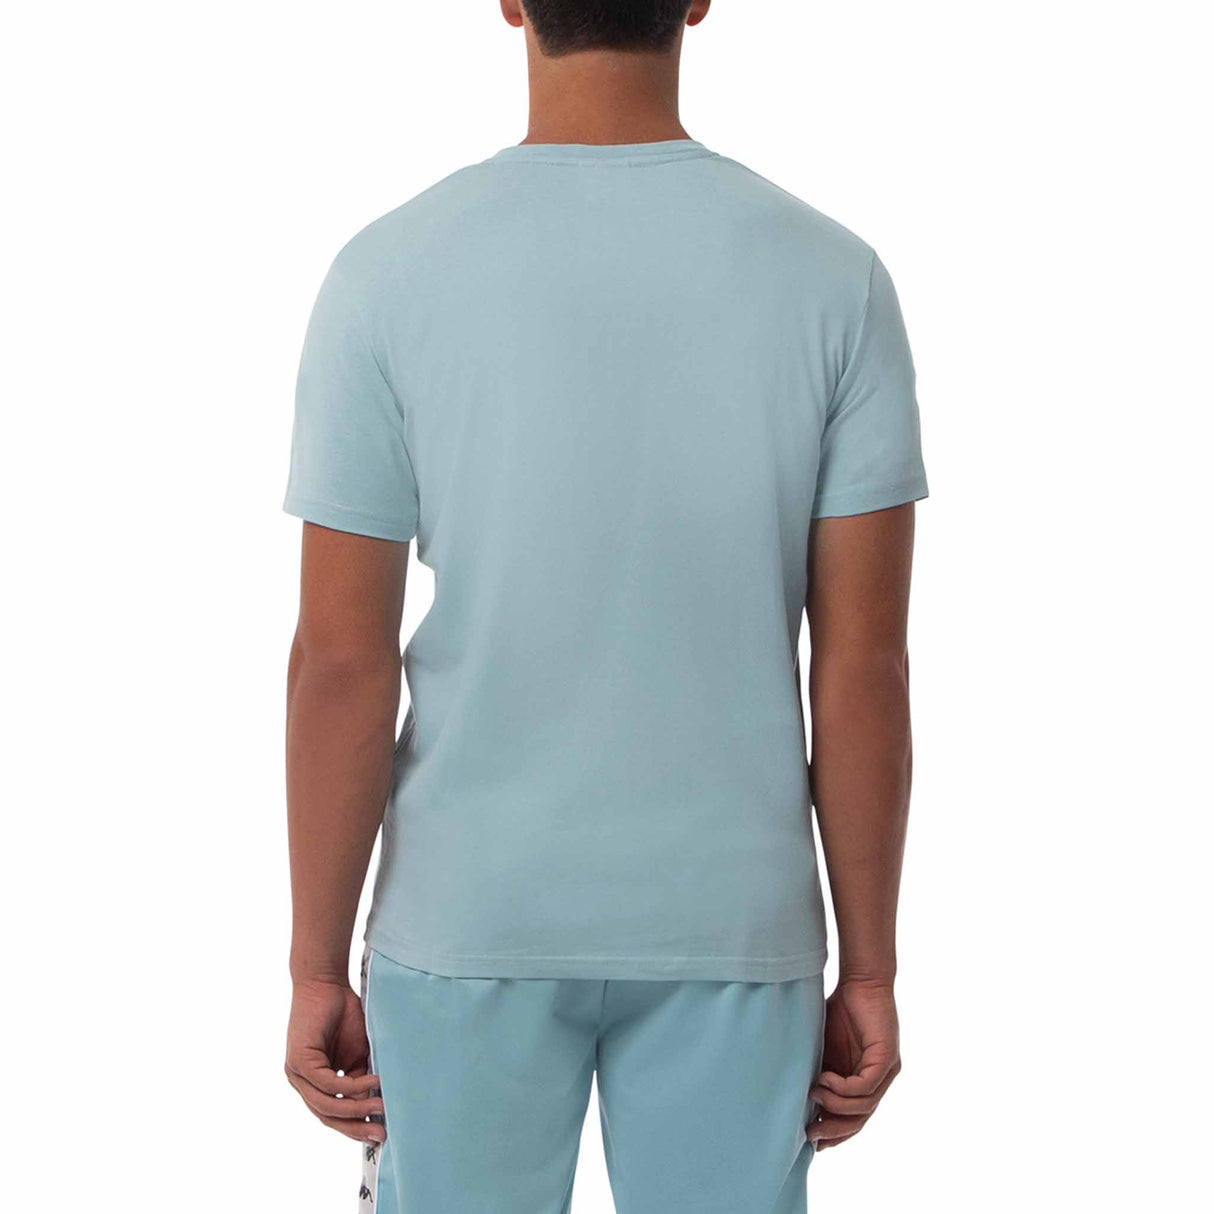 T-shirt Kappa Authentic Capurro slim pour homme Bleu/Blanc vue de dos